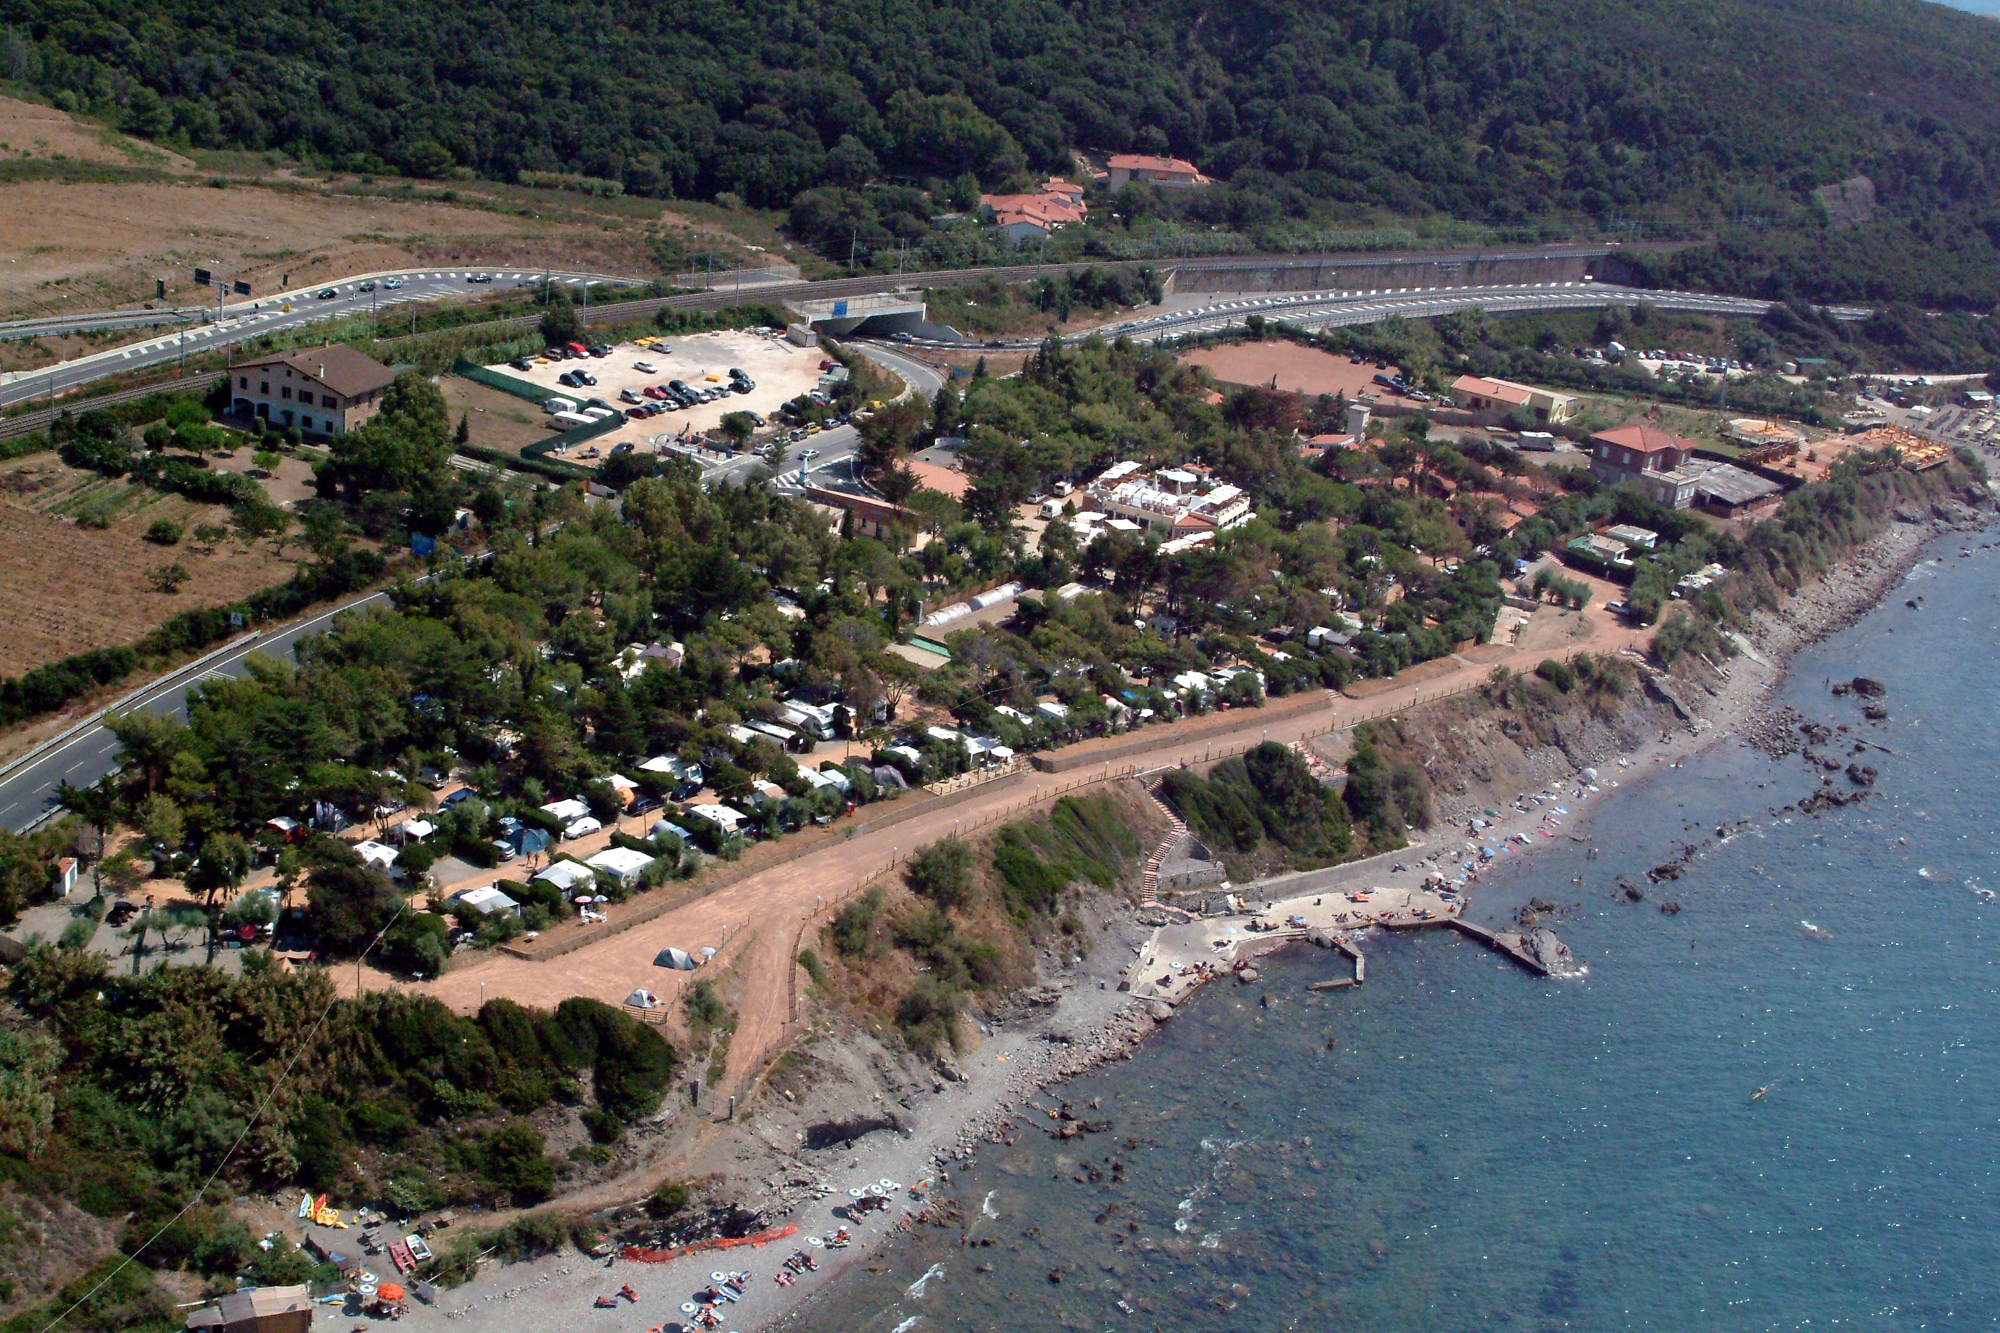 Vista aerea campeggio Miramare Antignano